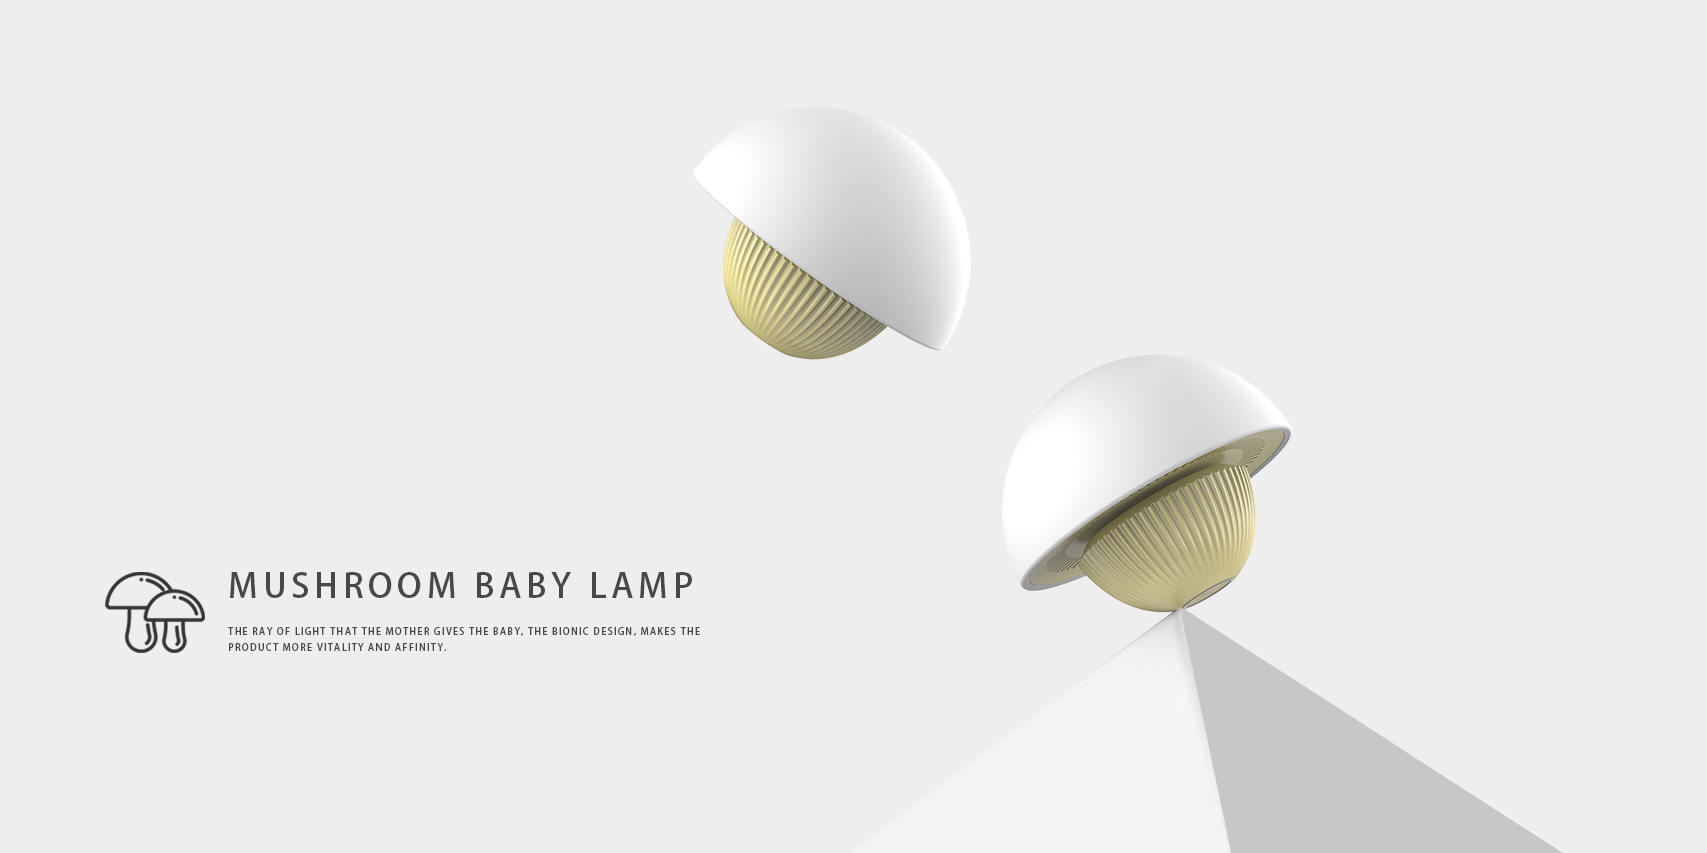 此款母婴灯采用仿生设计的手法,以"蘑菇"为灵感来源产品形象可爱且